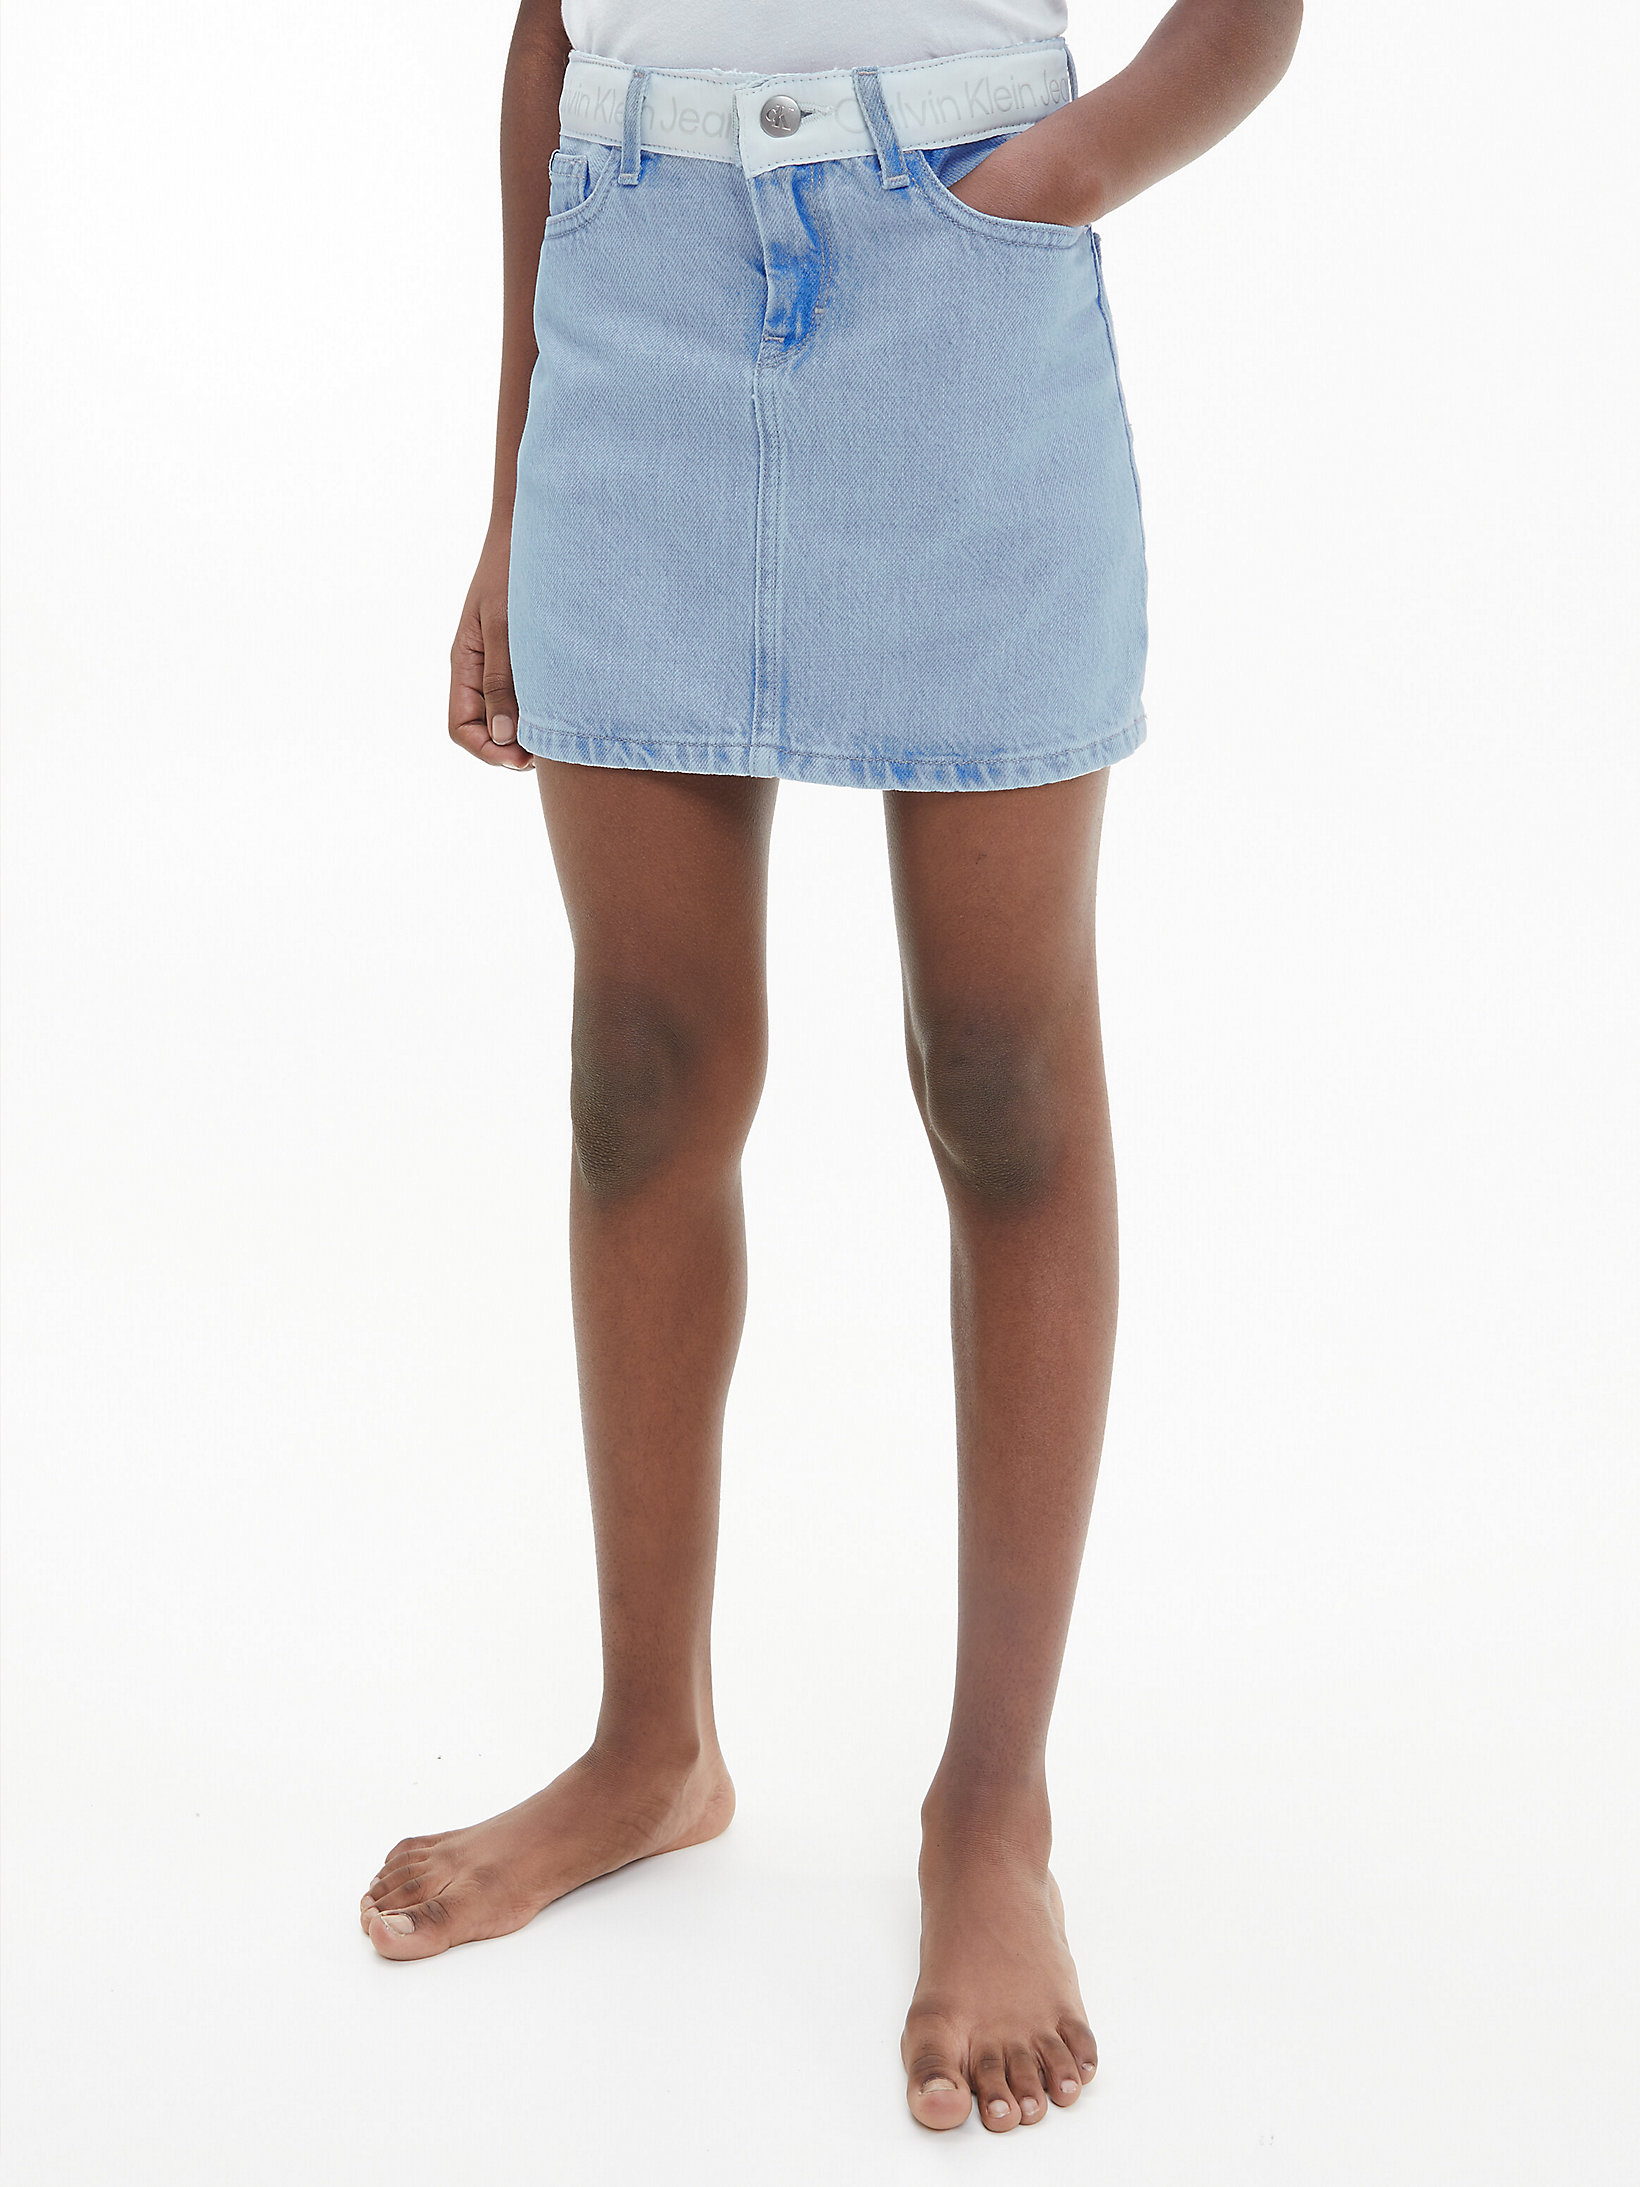 Bright Blue Denim Skirt undefined girls Calvin Klein